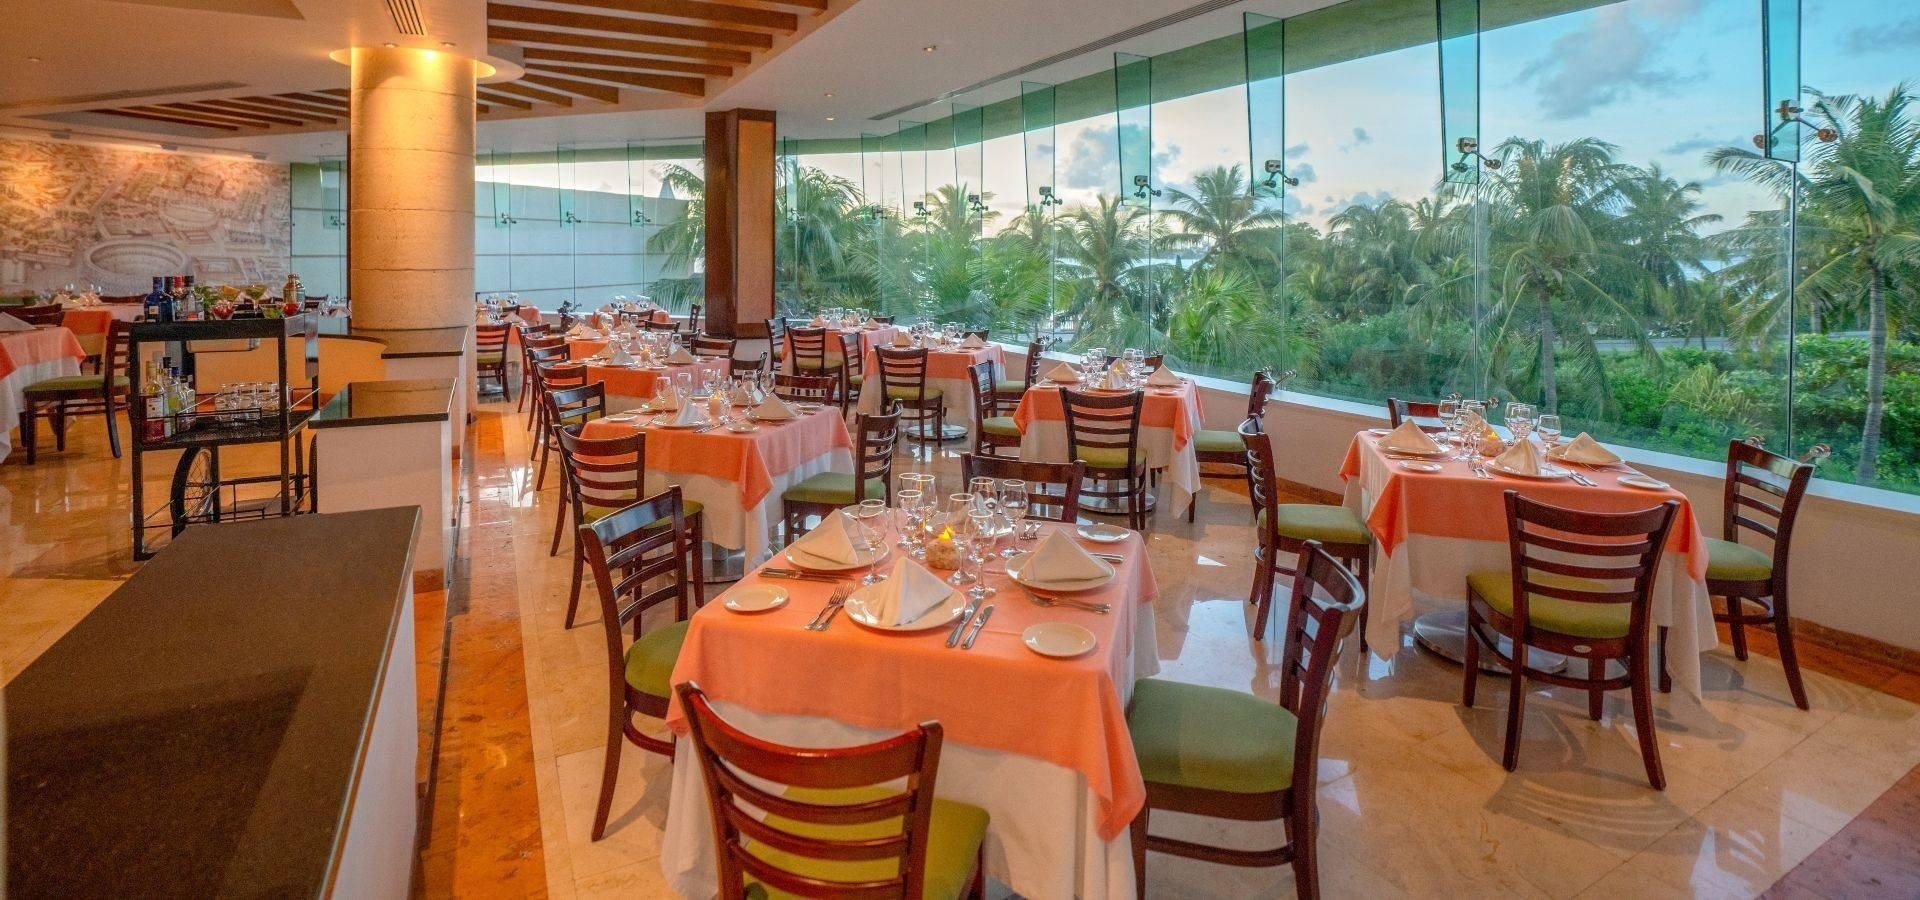 Restaurante El Mirador con vistas a jardín de palmeras de The Villas by Grand Park Royal Cancún 